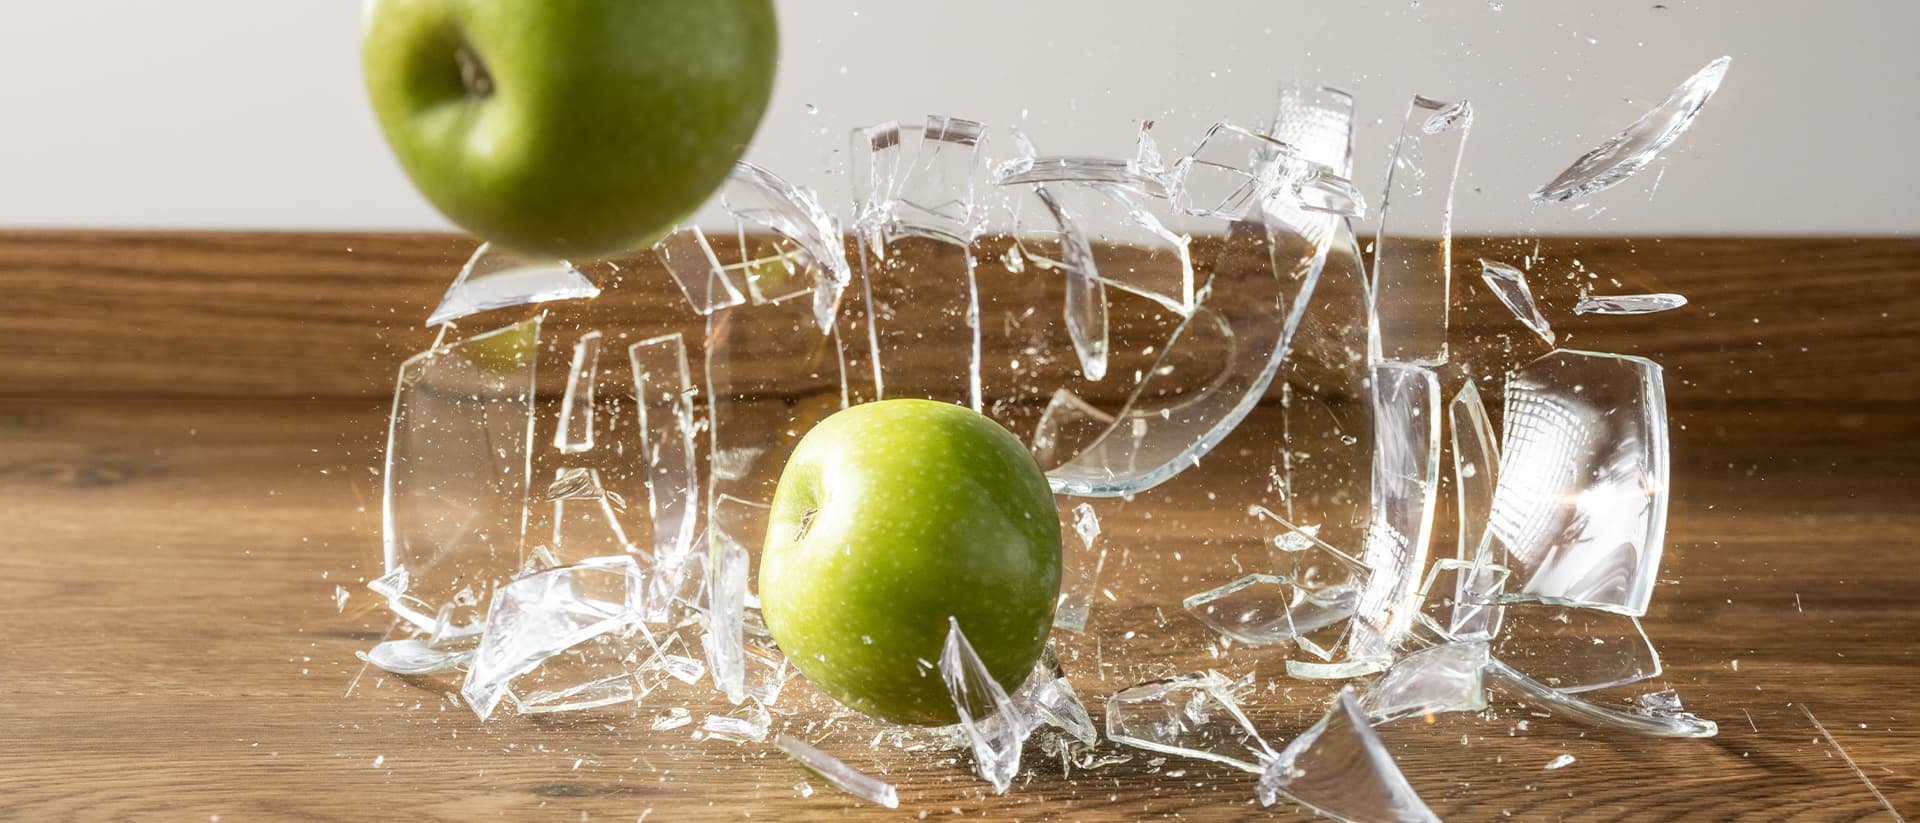 en glassvase med epler faller ned på et brunt vinylgulv og knuser